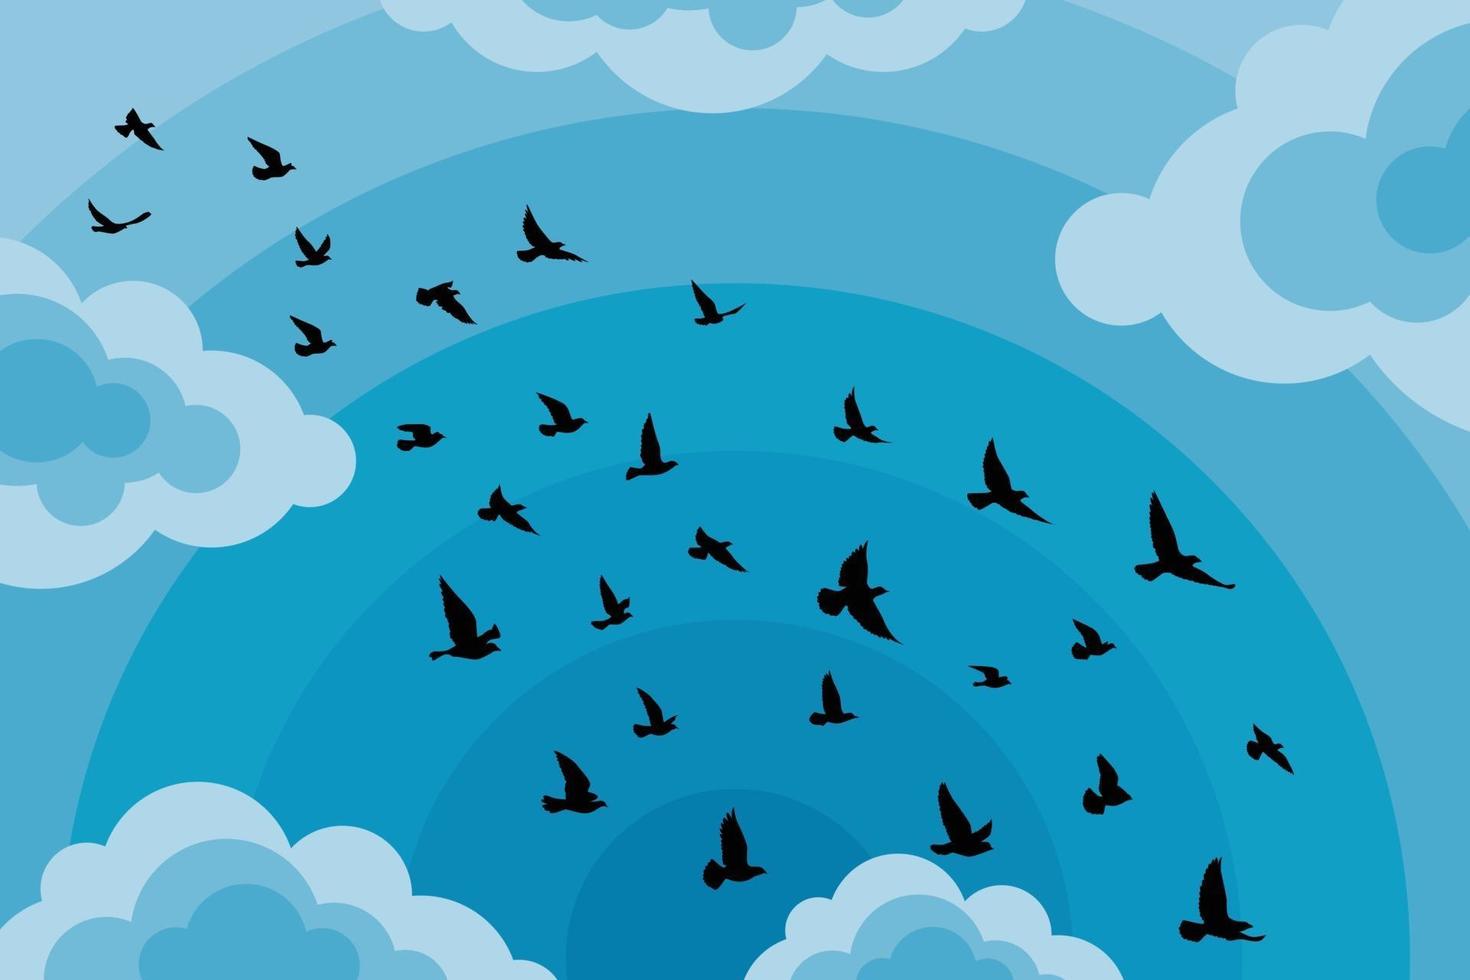 flygande fåglar silhuetter på vit bakgrund. vektor illustration. isolerad fågel som flyger. tatuering och tapet bakgrundsdesign. himmel och moln med flugfågel.